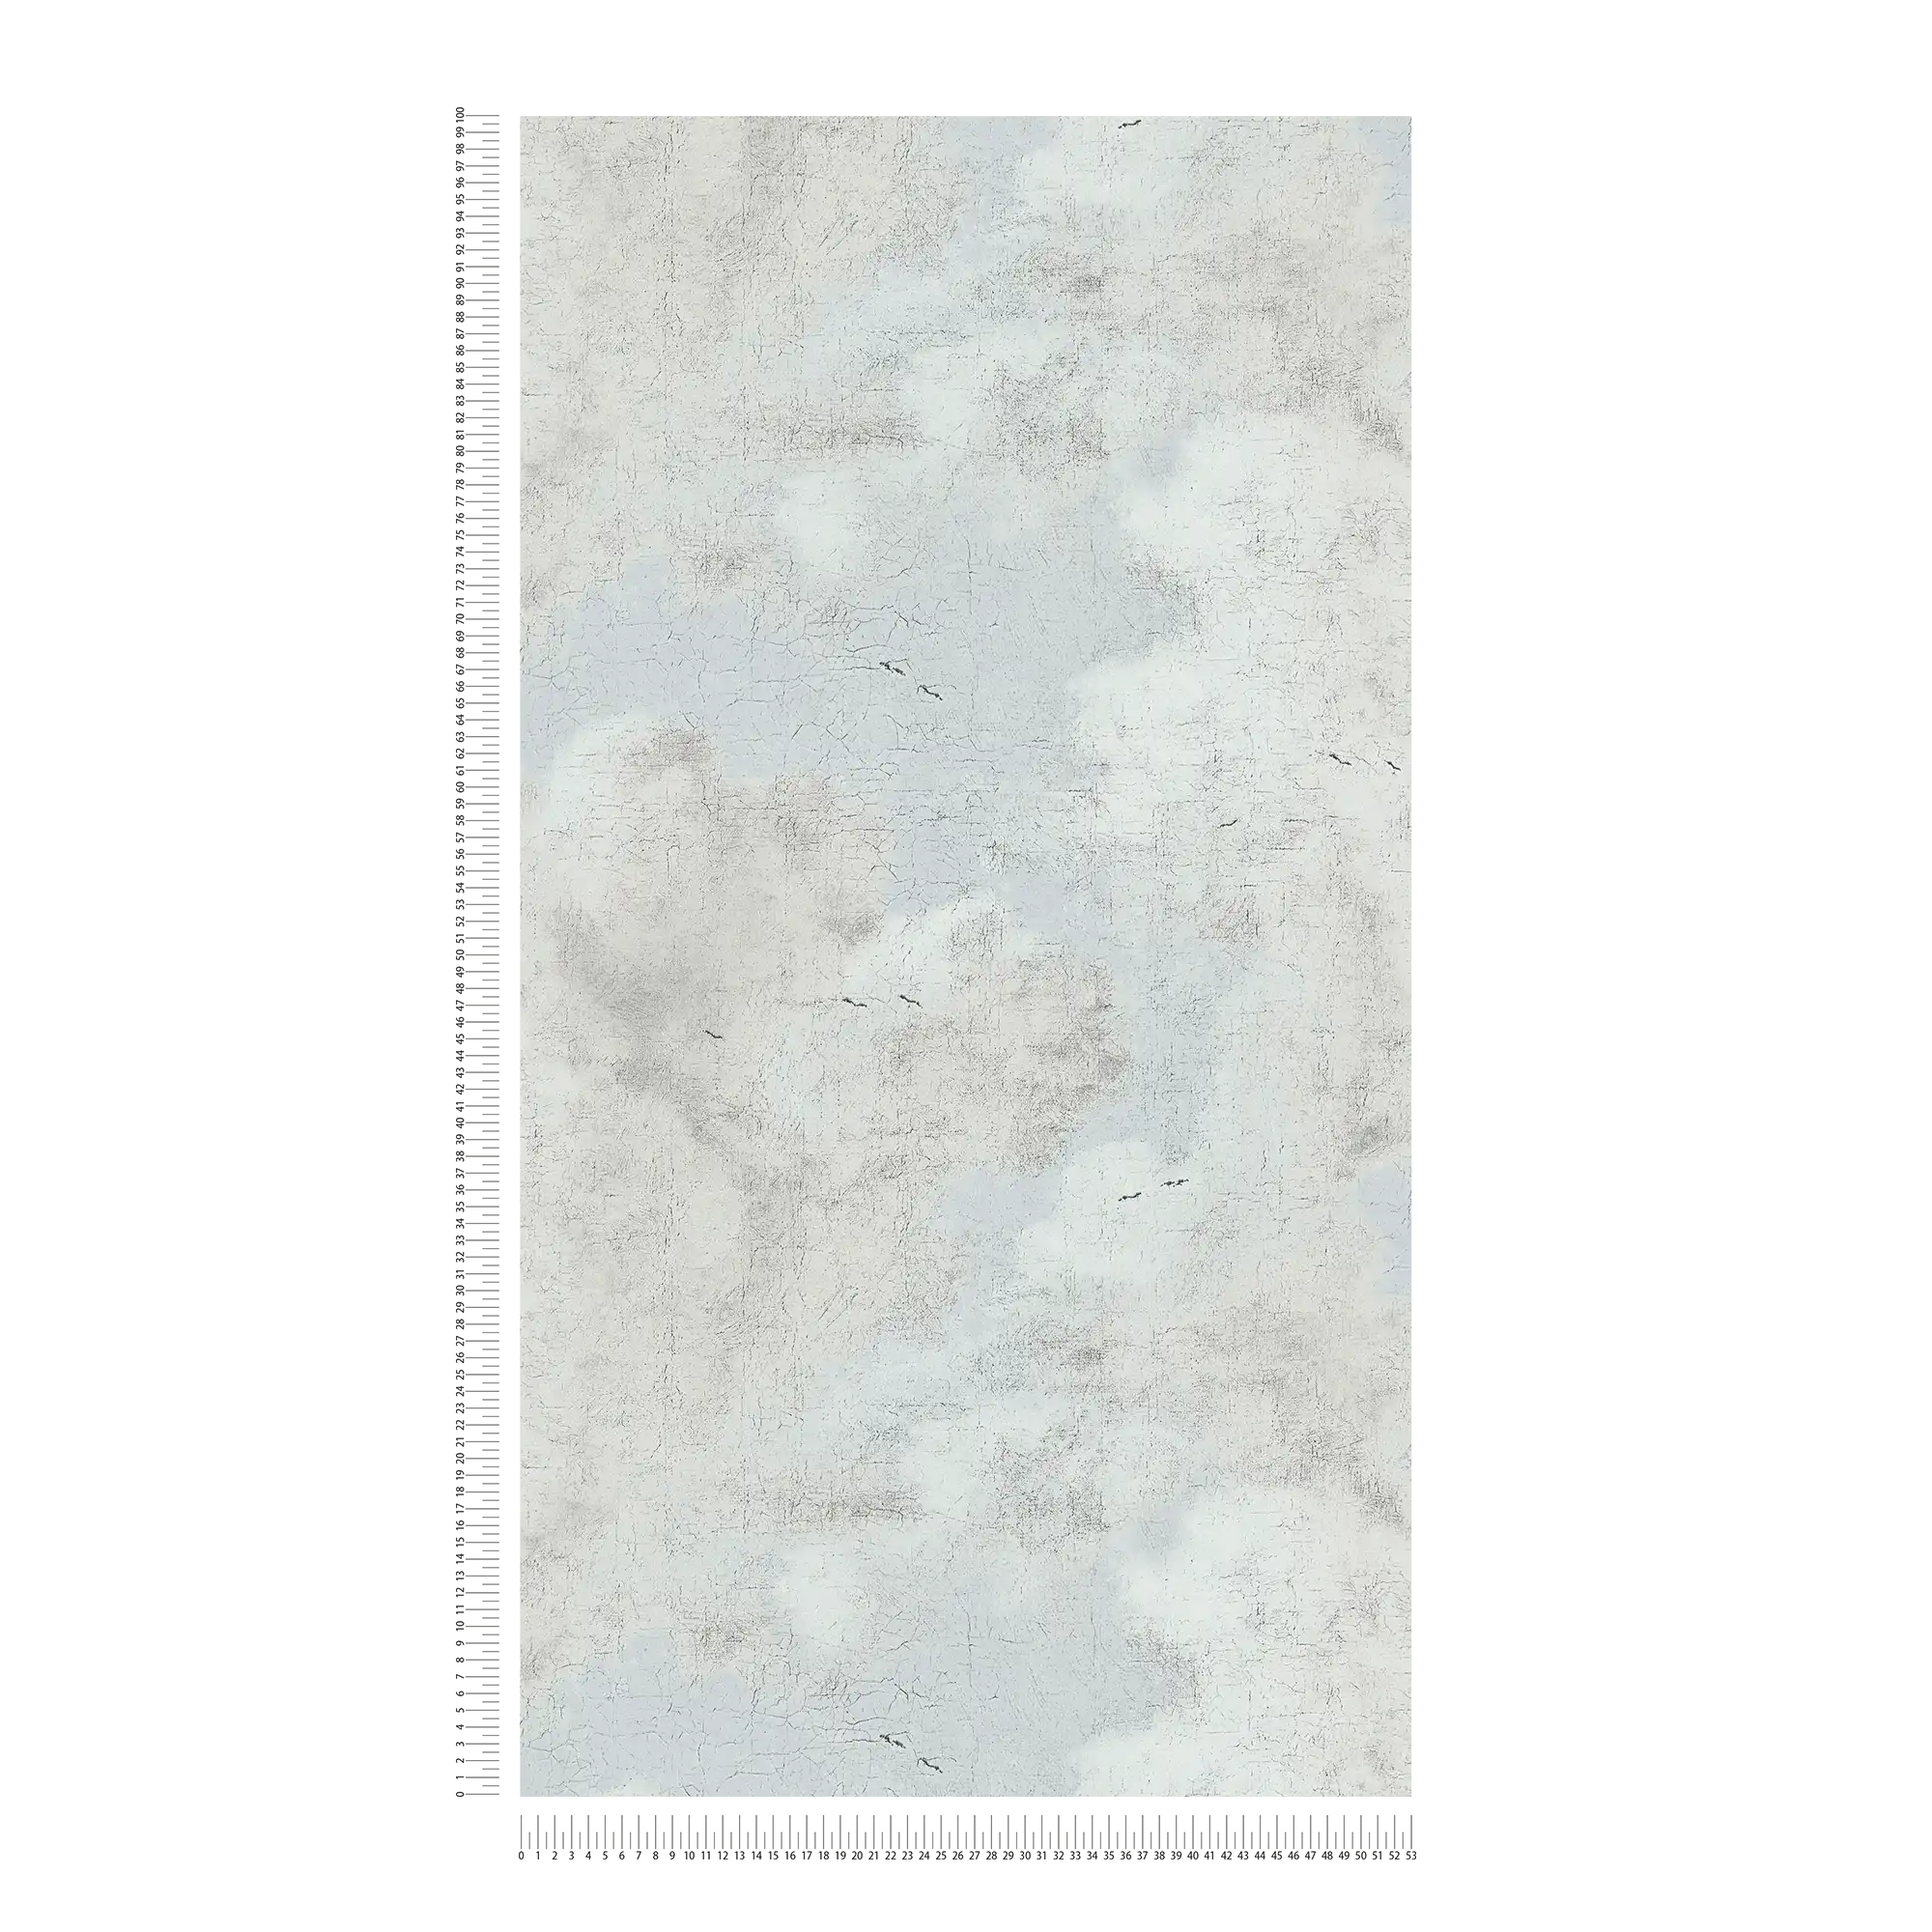             Papier peint intissé Ciel nuageux dans le style artistique - crème, blanc, bleu
        